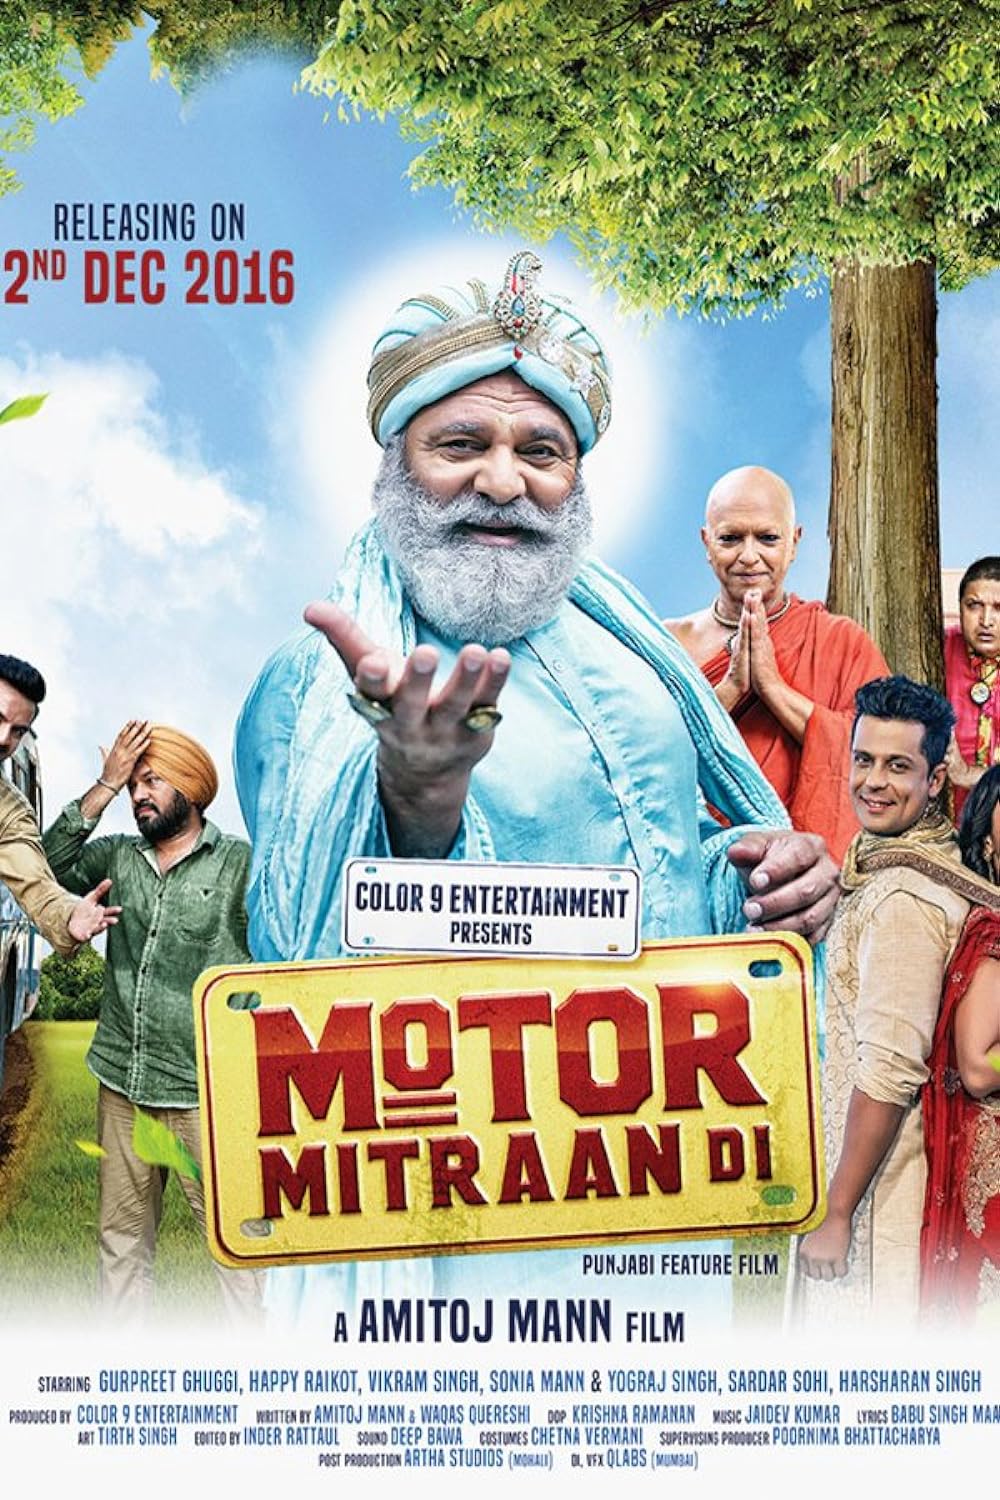 Motor Mitraan Di (2016) 1080p HDRip Full Punjabi Movie ESubs [2.1GB]